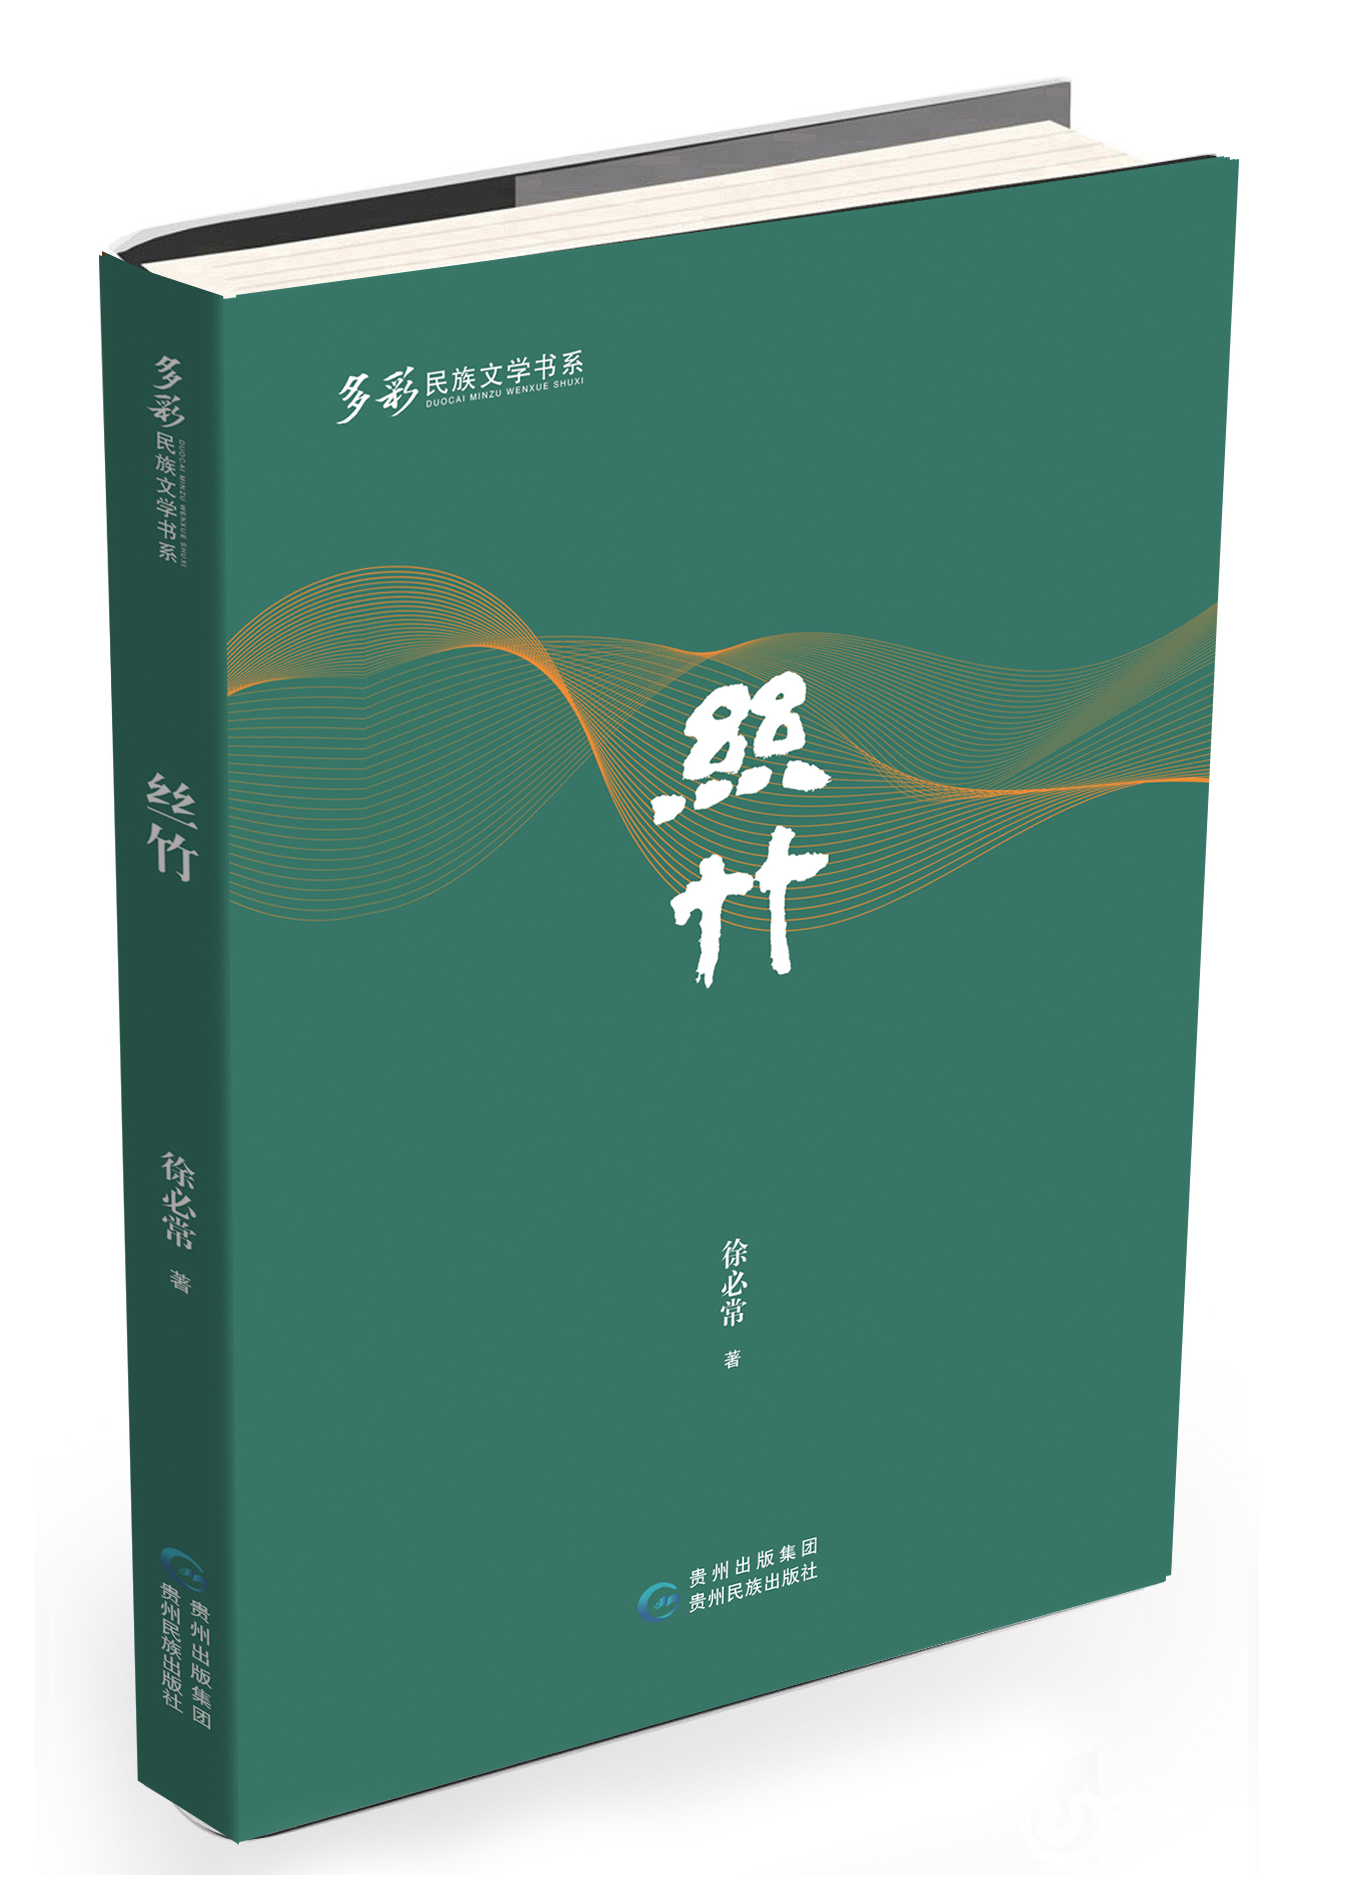 【正版新书包邮】《多彩民族文学书系·丝竹》这是一本以乡村、民族乐器、经济等元素创作的拯救非遗文化的小说